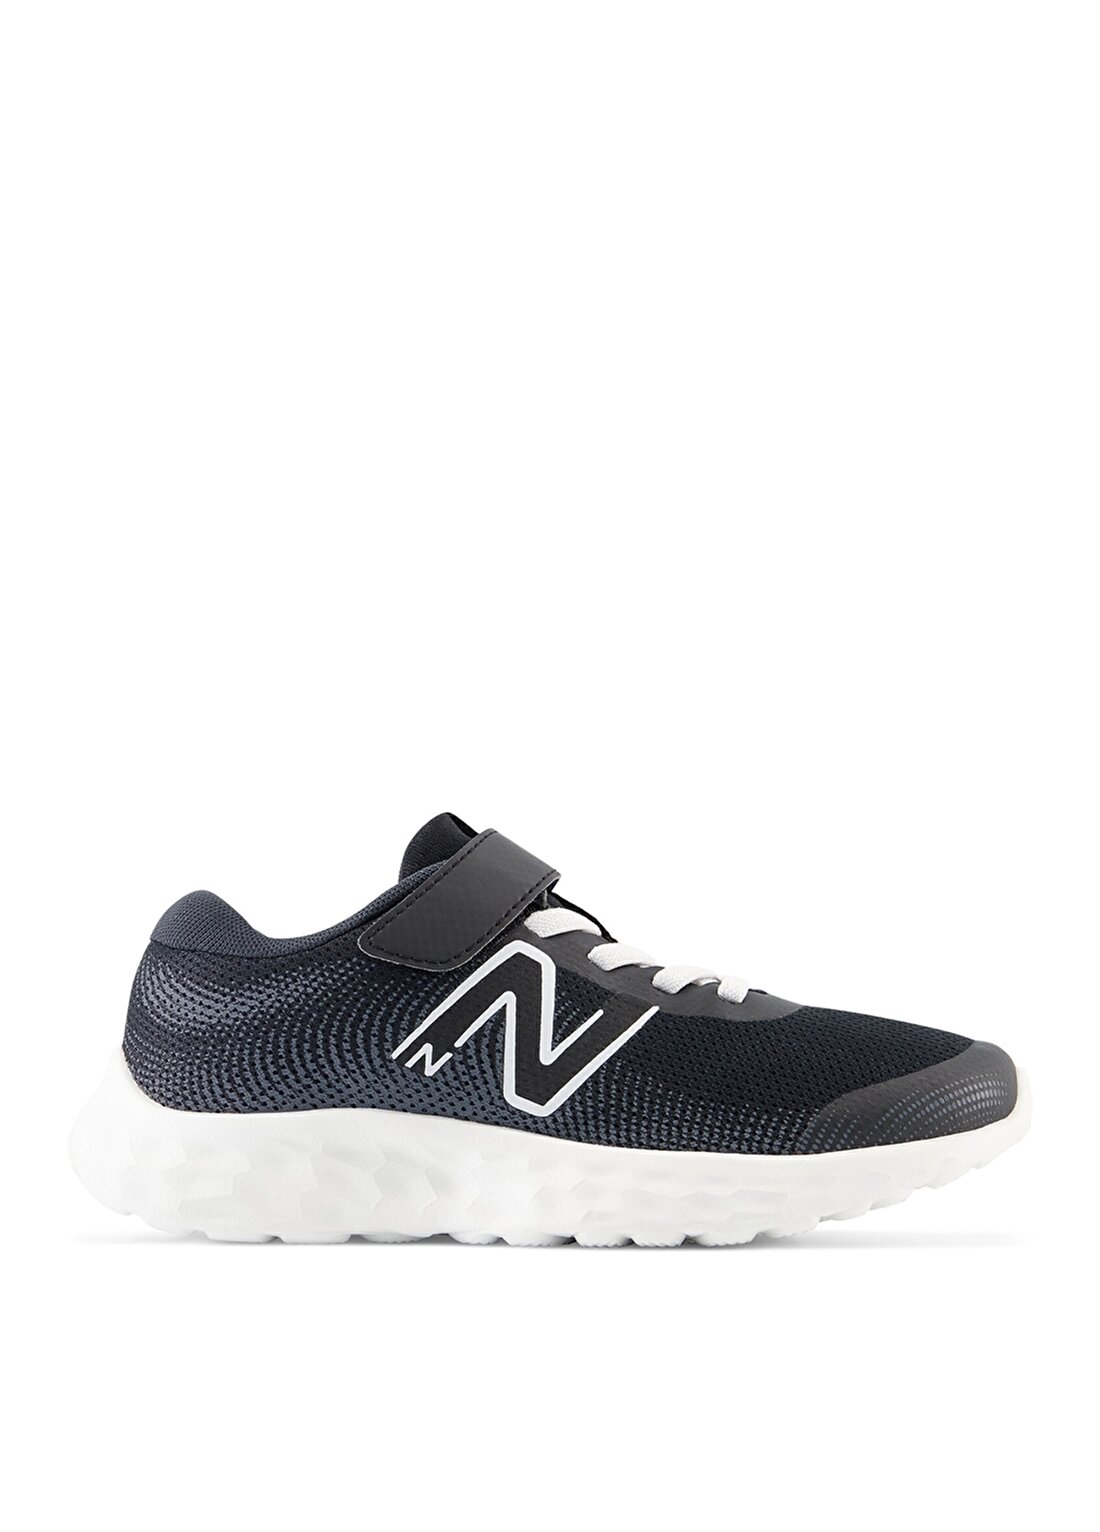 New Balance Siyah Erkek Çocuk Yürüyüş Ayakkabısı PA520BW8 NB Running Preschool Sh